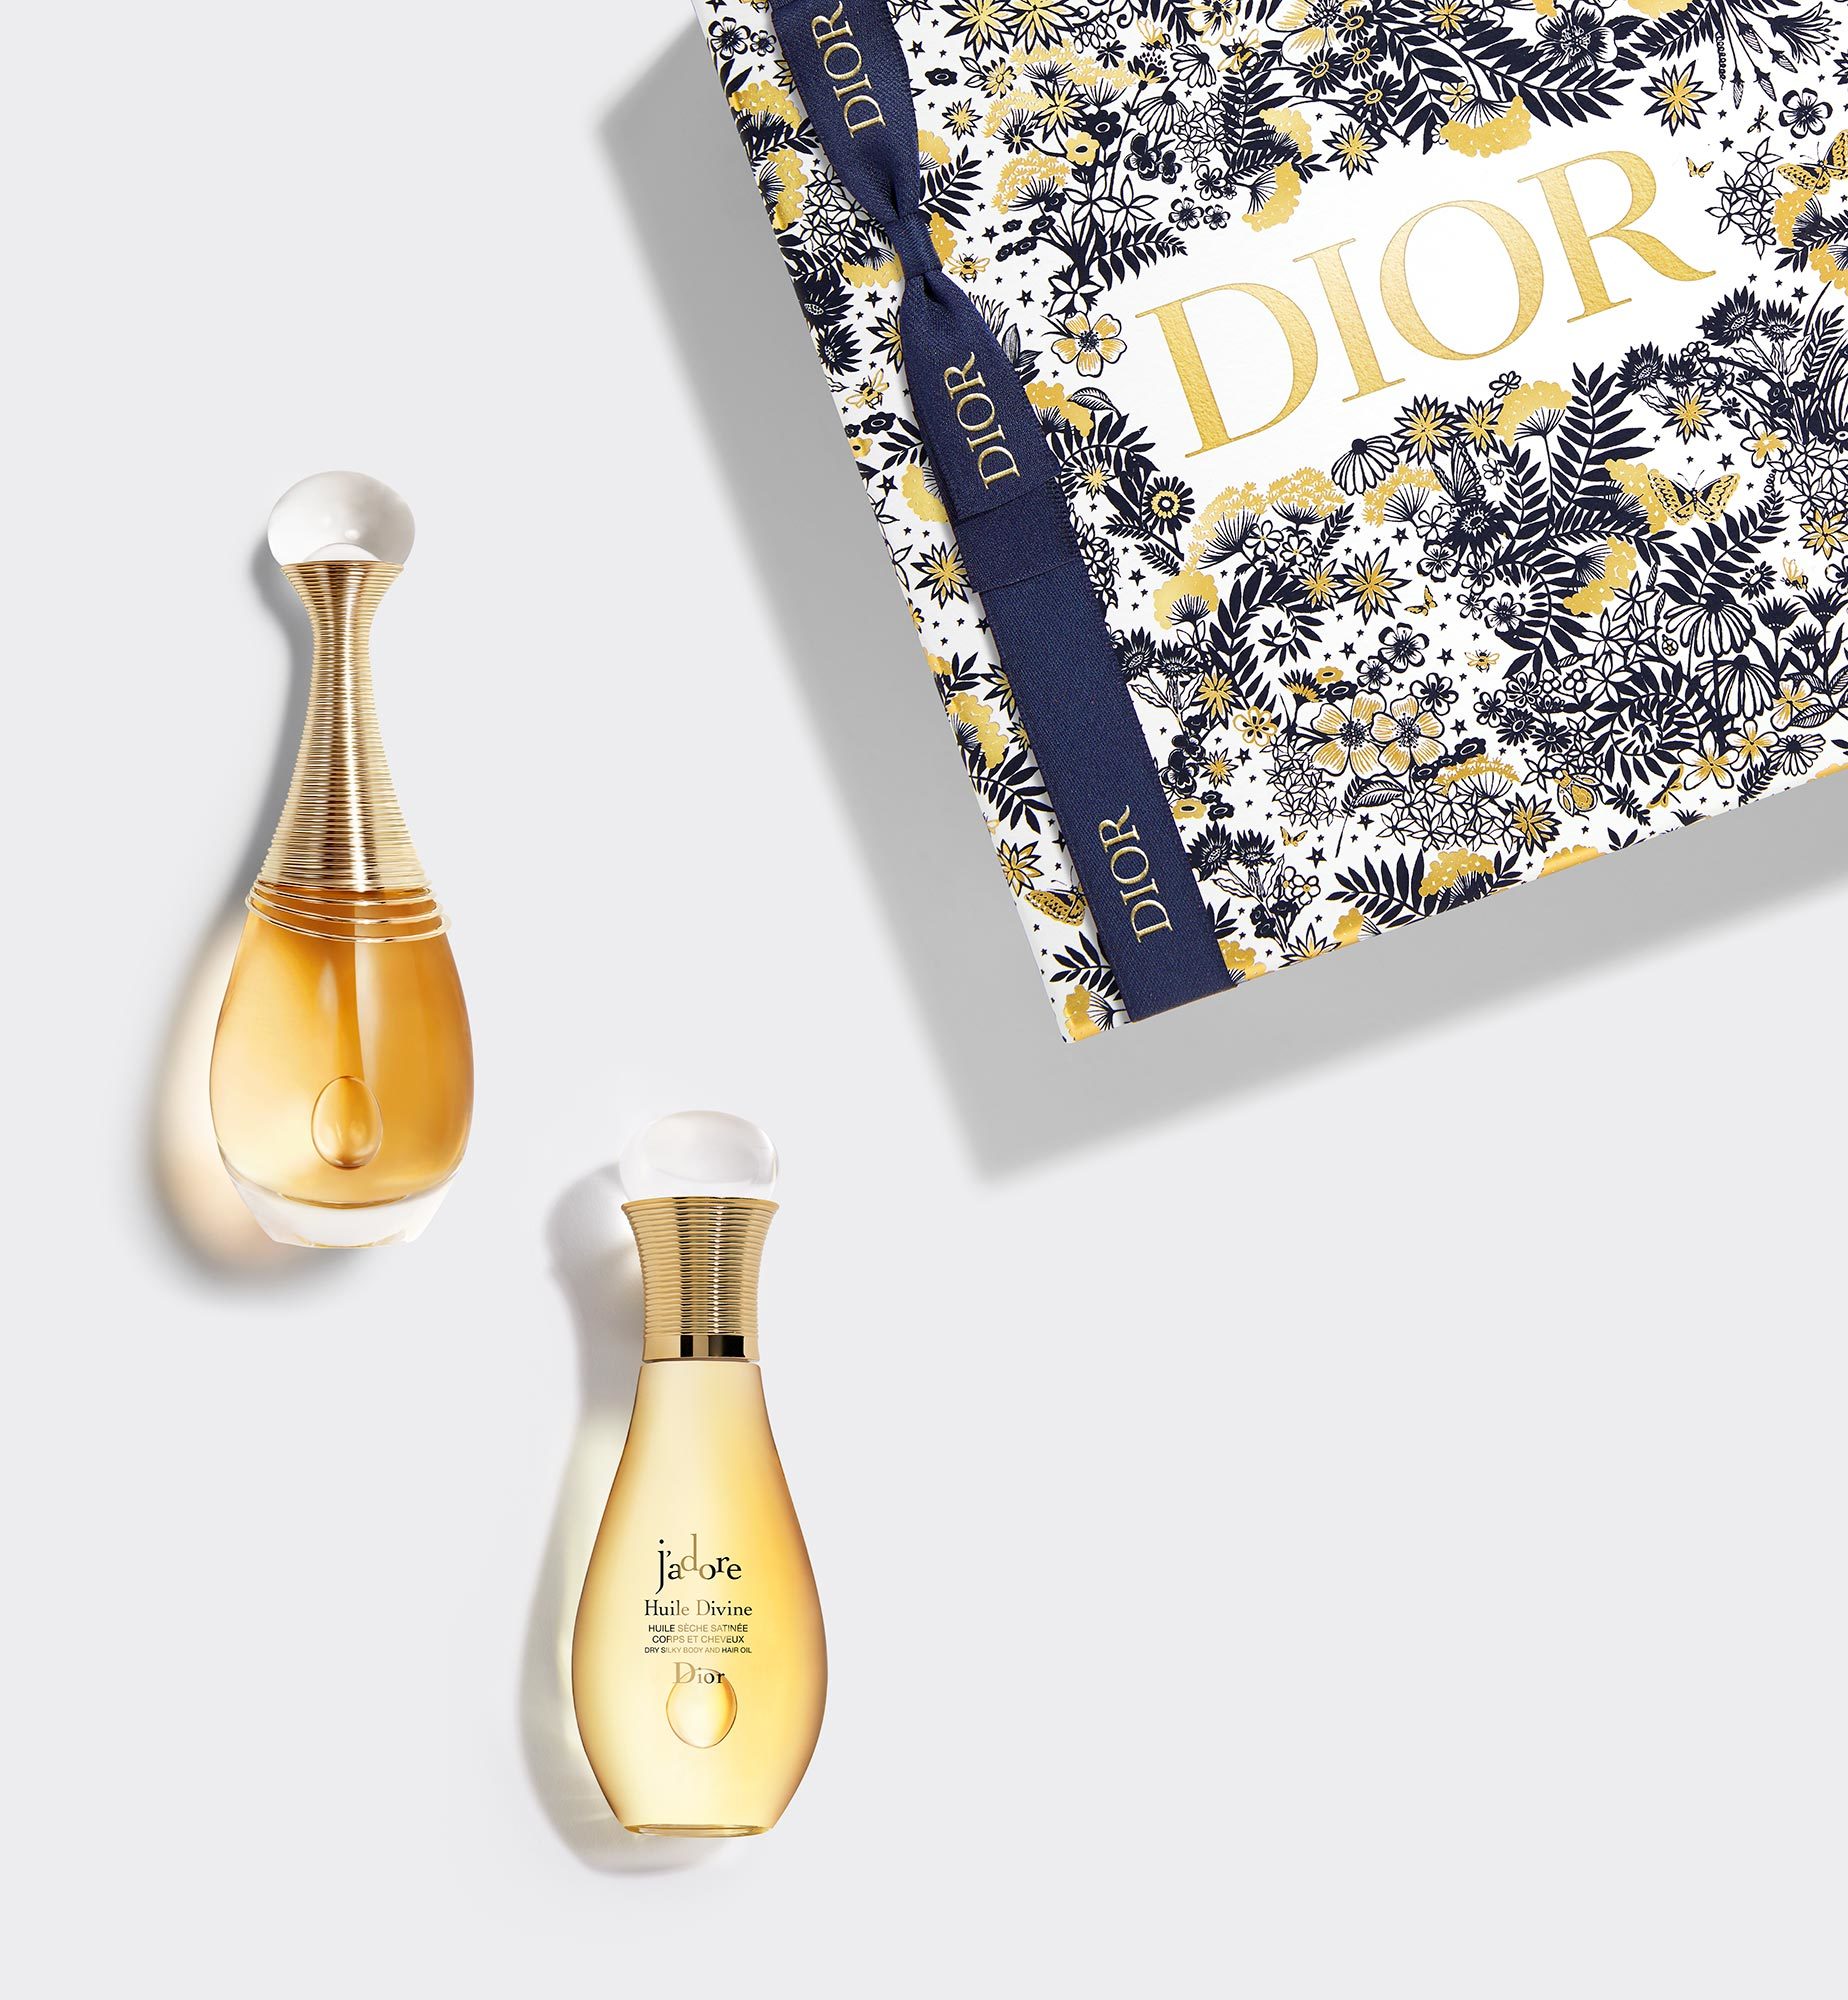 Купить женские духи Dior Кристиан Диор в интернетмагазине  Snikco